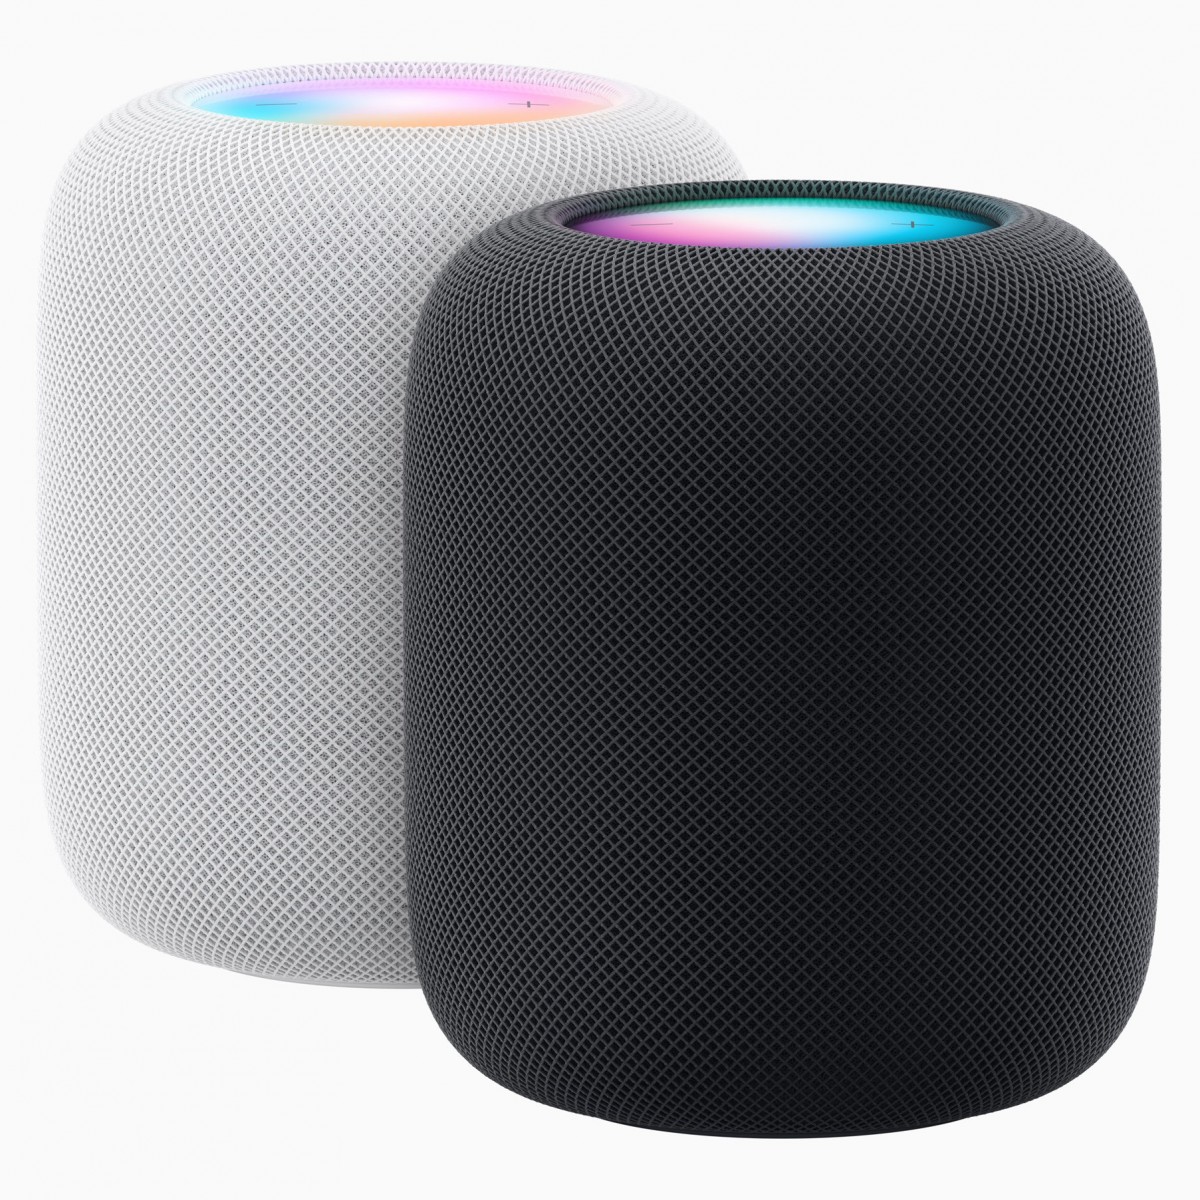 Apple công bố HomePod thế hệ thứ hai với cảm biến nhiệt độ và độ ẩm